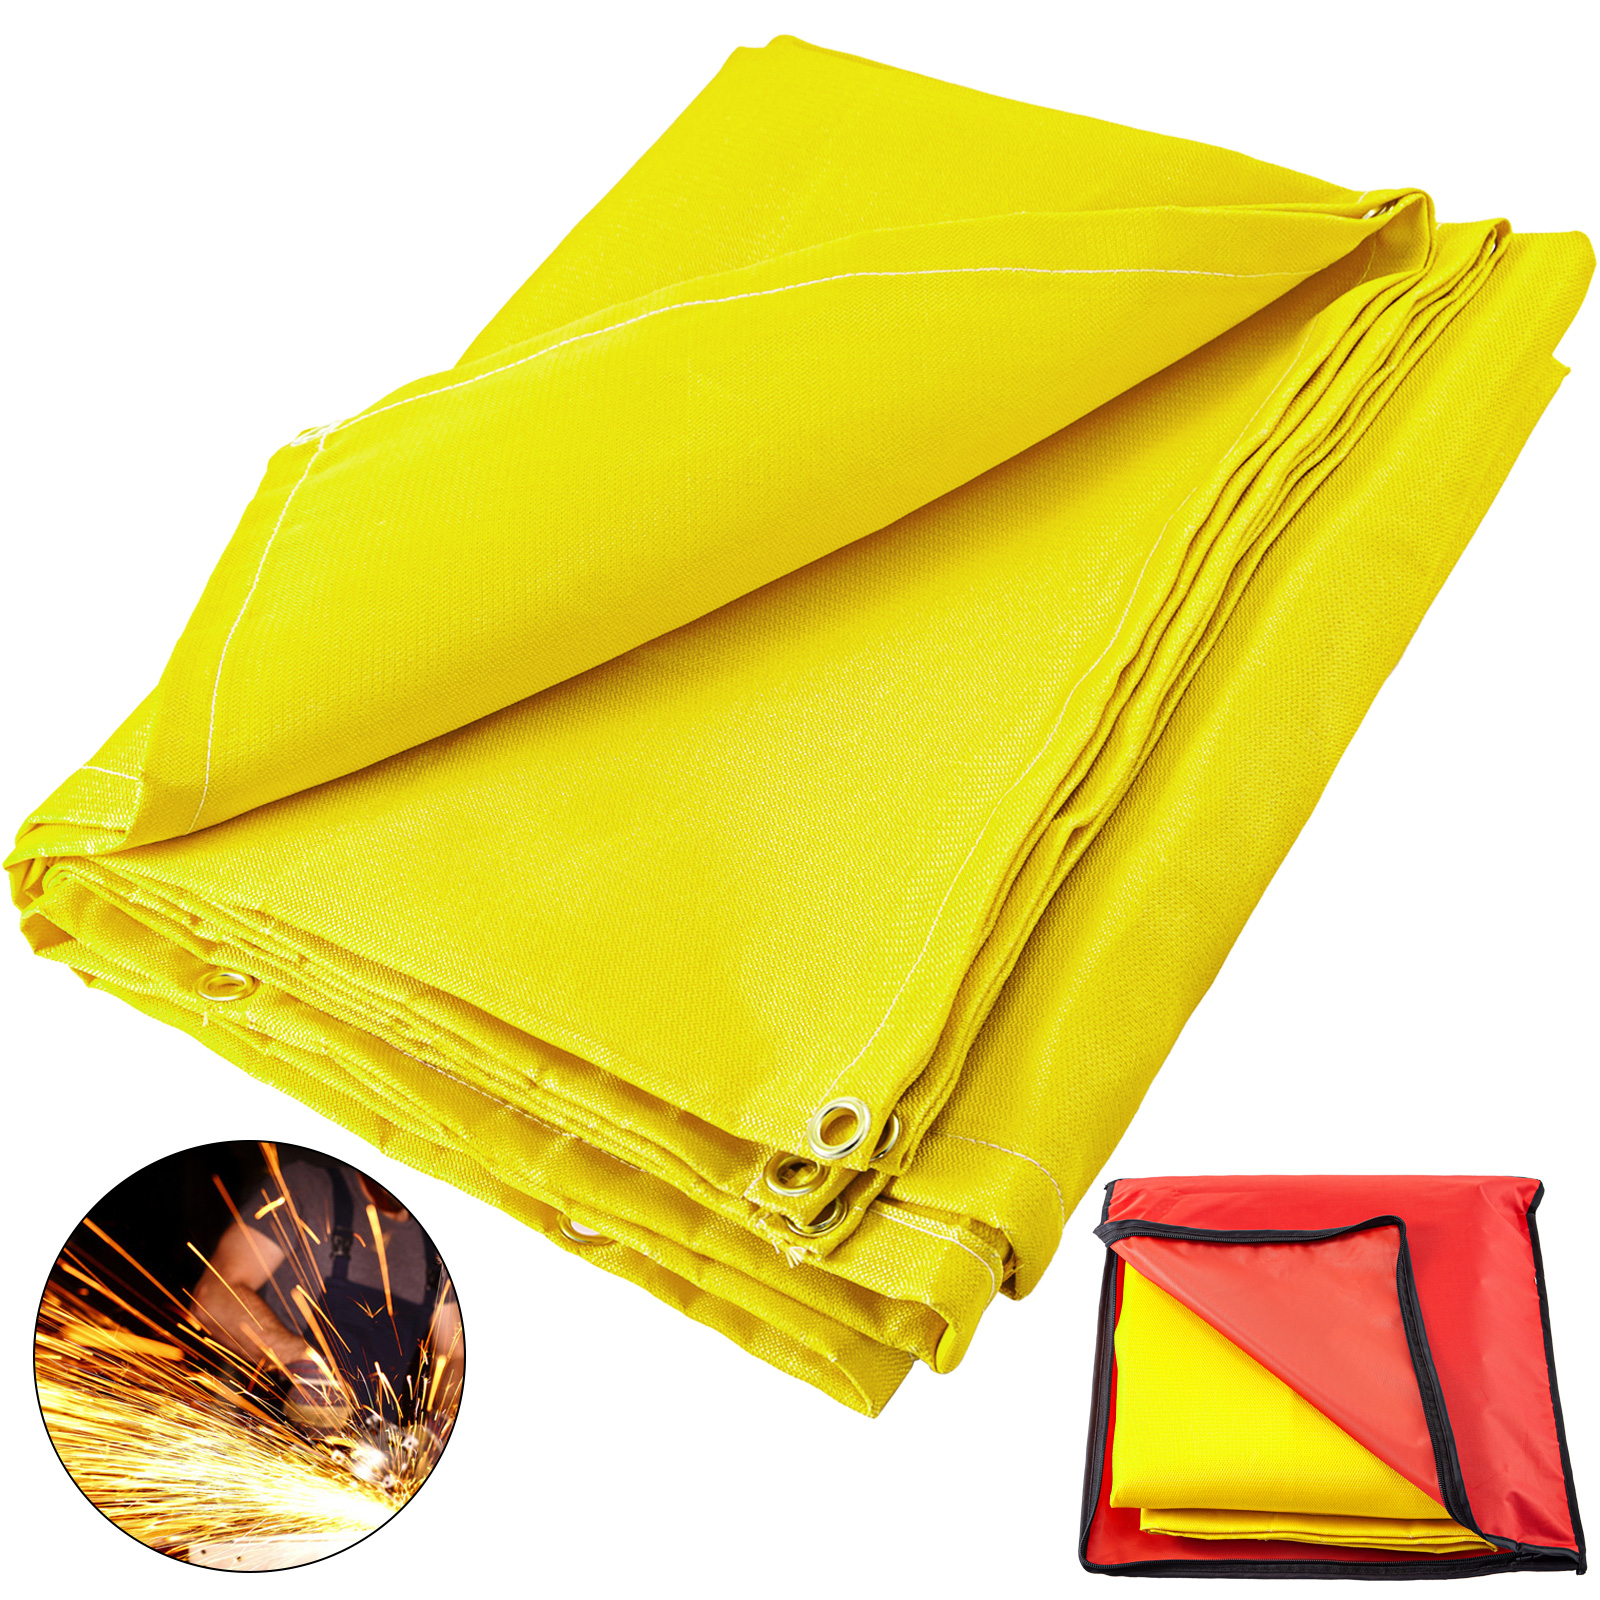 Welding Blanket Fiberglass Blanket 6 X 10 Ft Fire Retardant Blanket Golden от Vevor Many GEOs